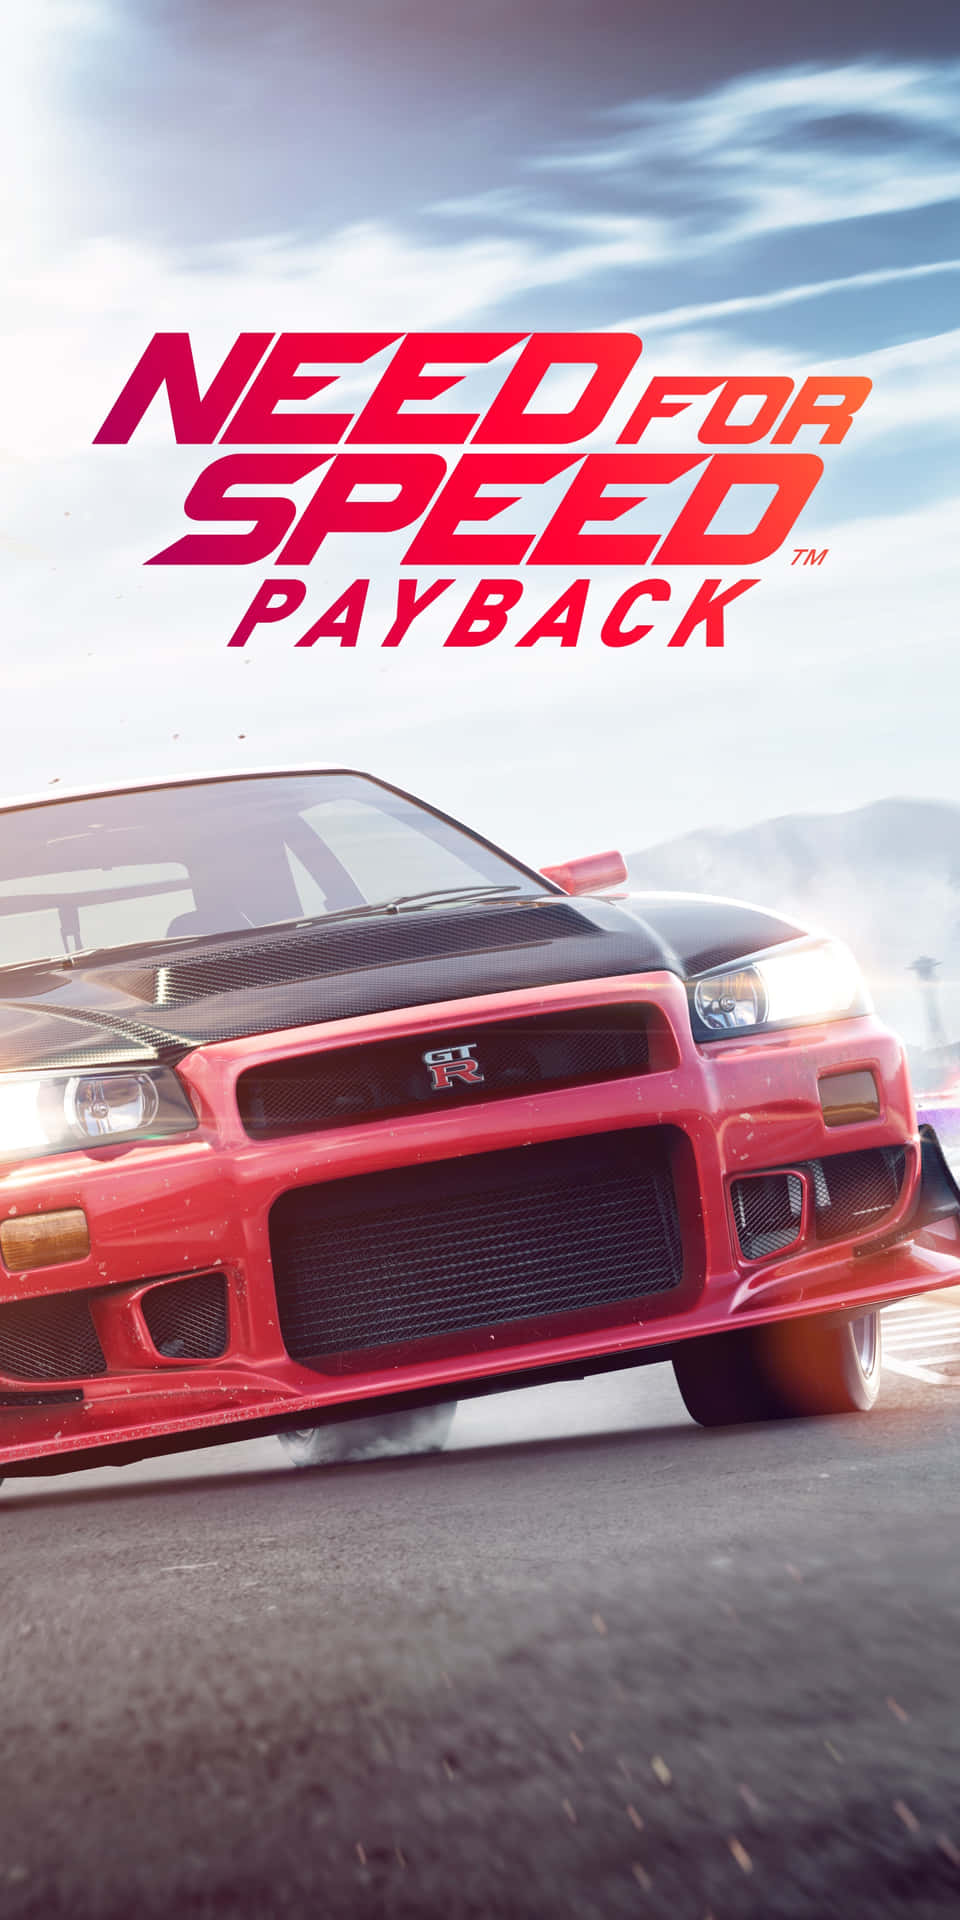 Fondode Pantalla De Pixel 3 Need For Speed Payback Con Un Coche Rojo.